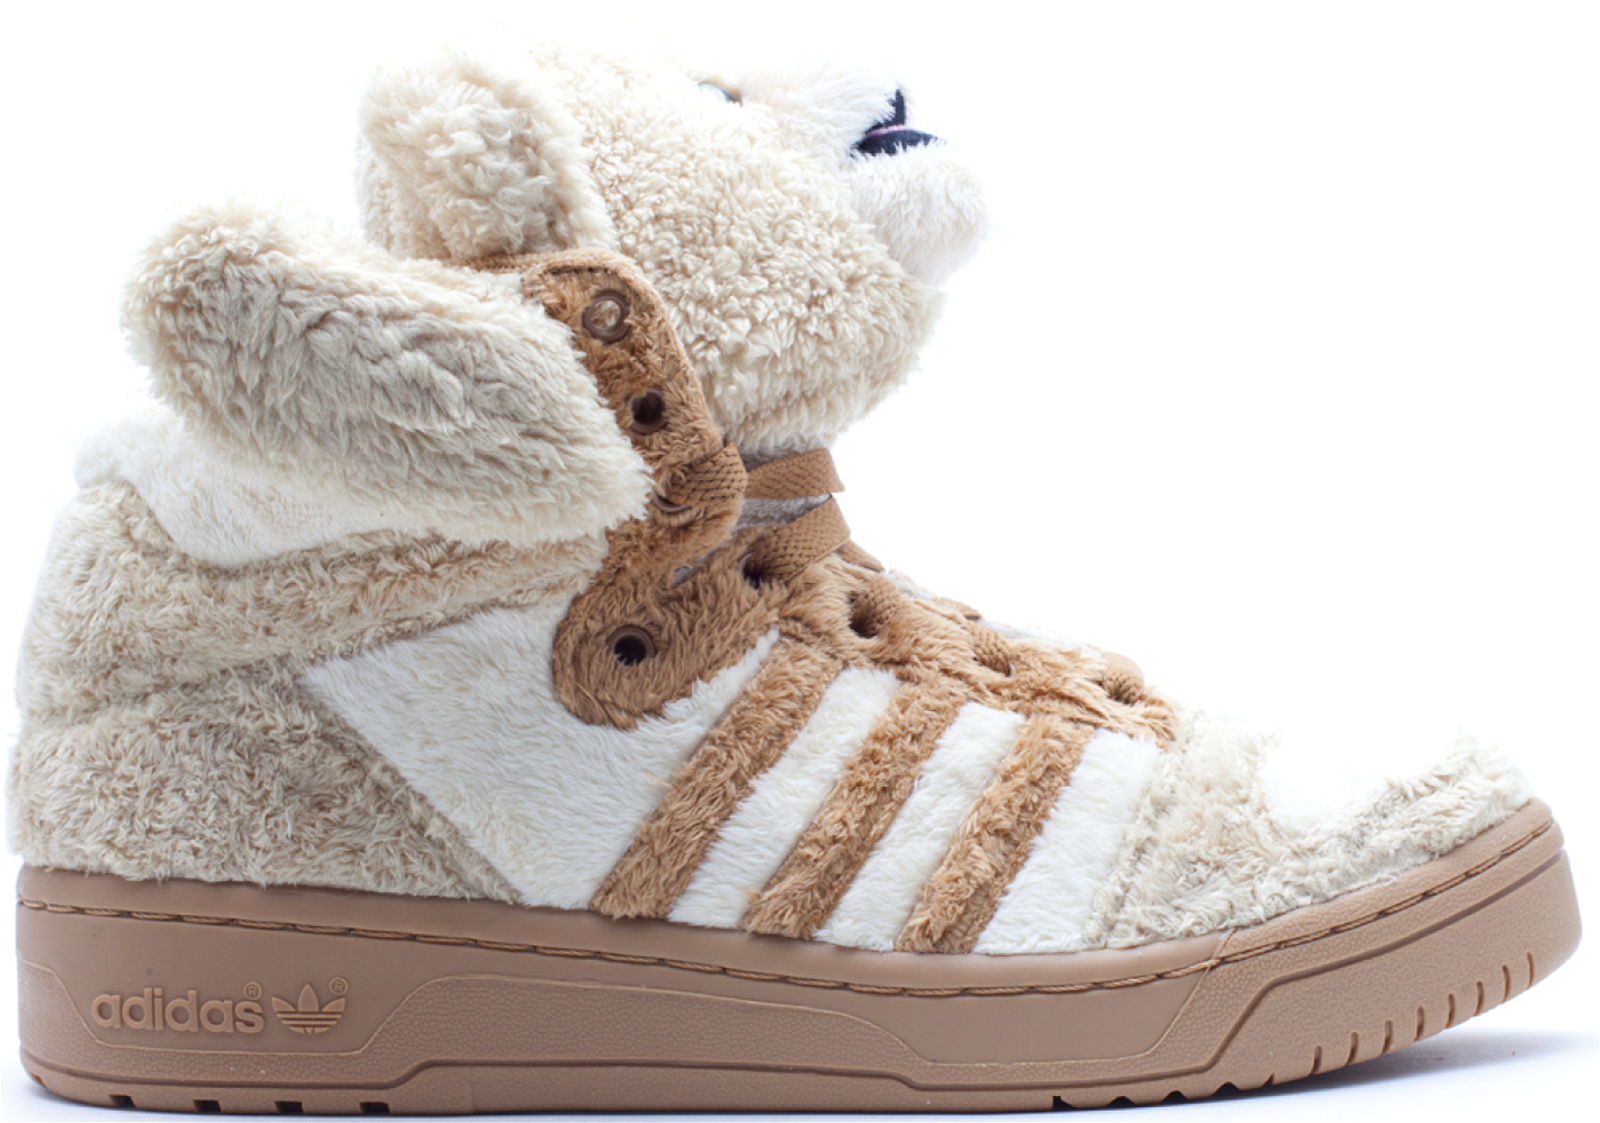 adidas JS Bear Jeremy Scott Teddy Bear (Brown) sneakers